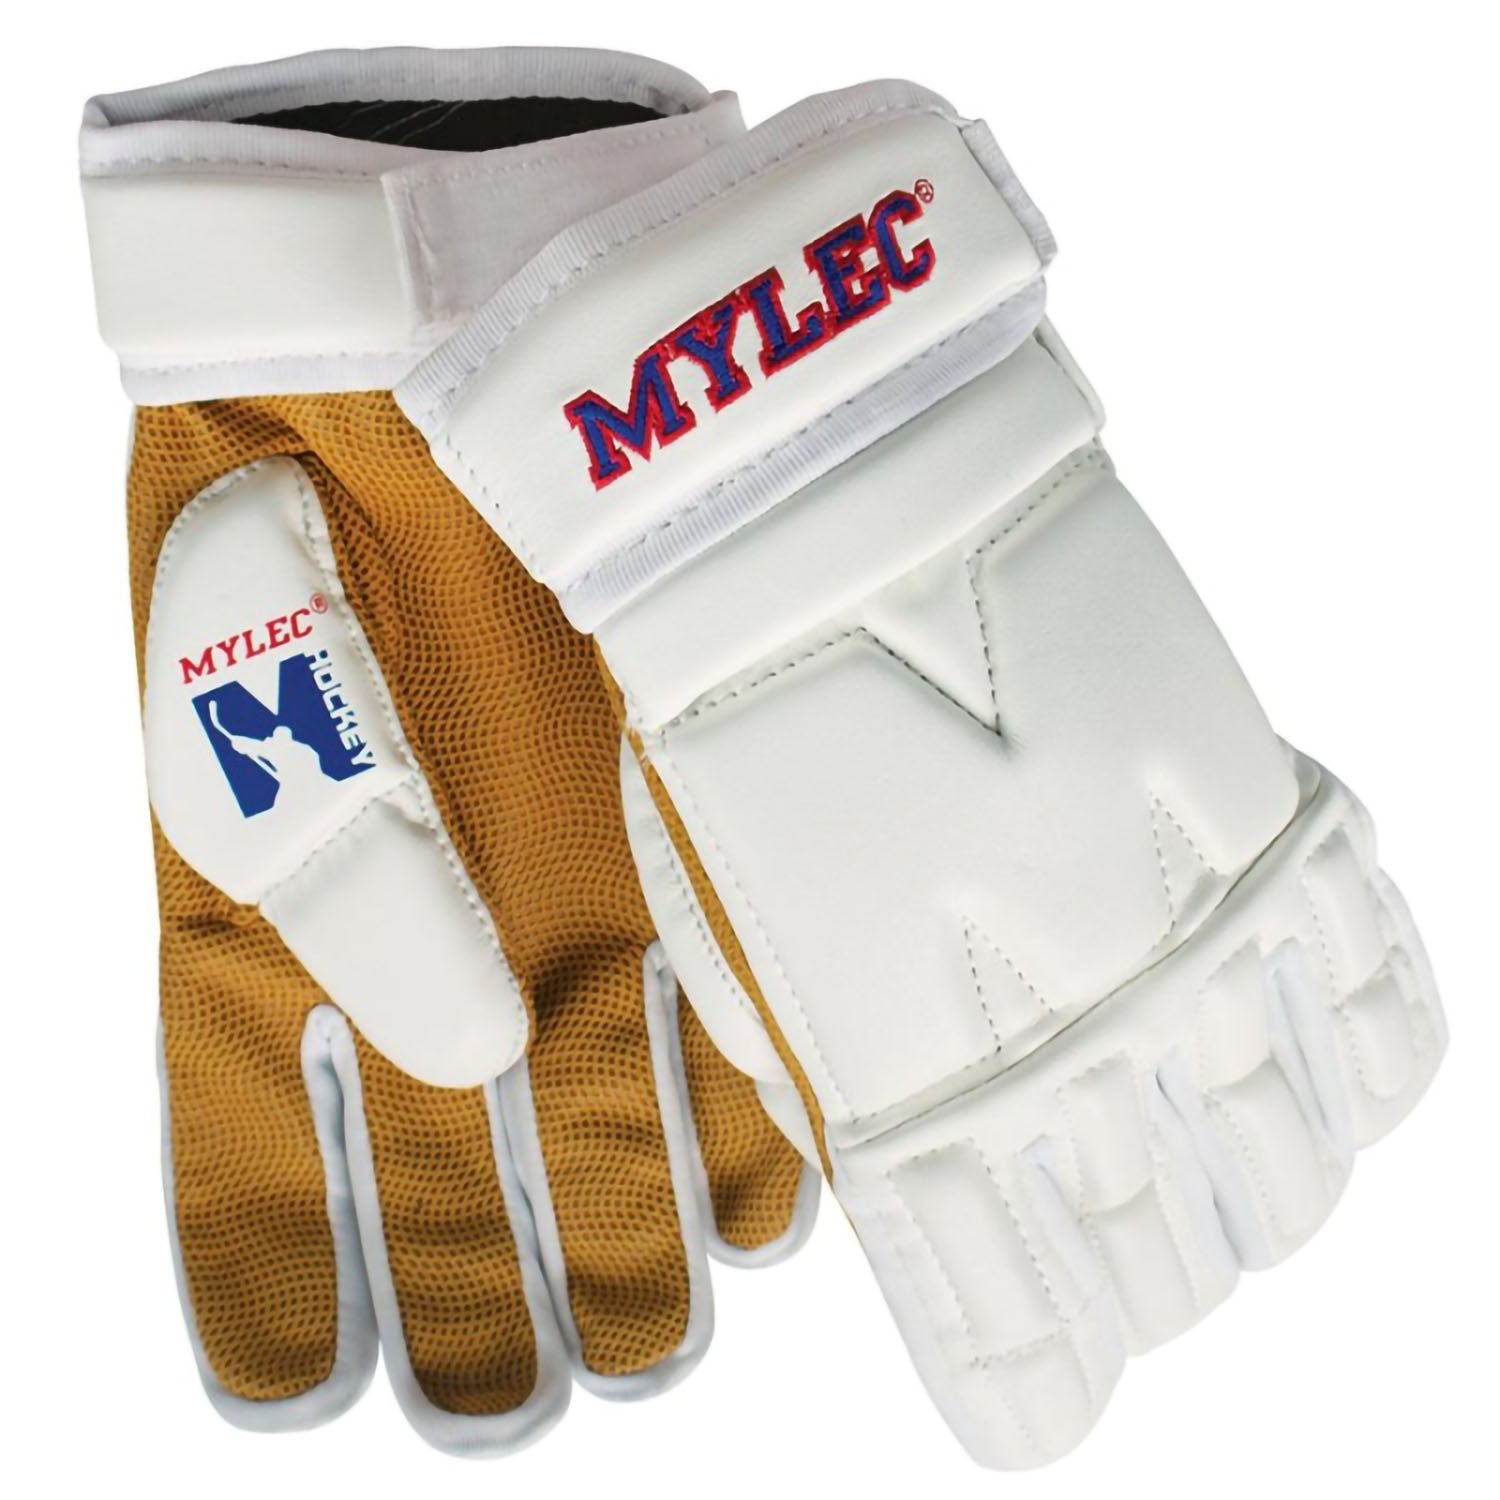 Mylec MK3 13" Large Roller Hockey, Dek Hockey, Street Hockey Player Gloves - White - Pro-Distributing